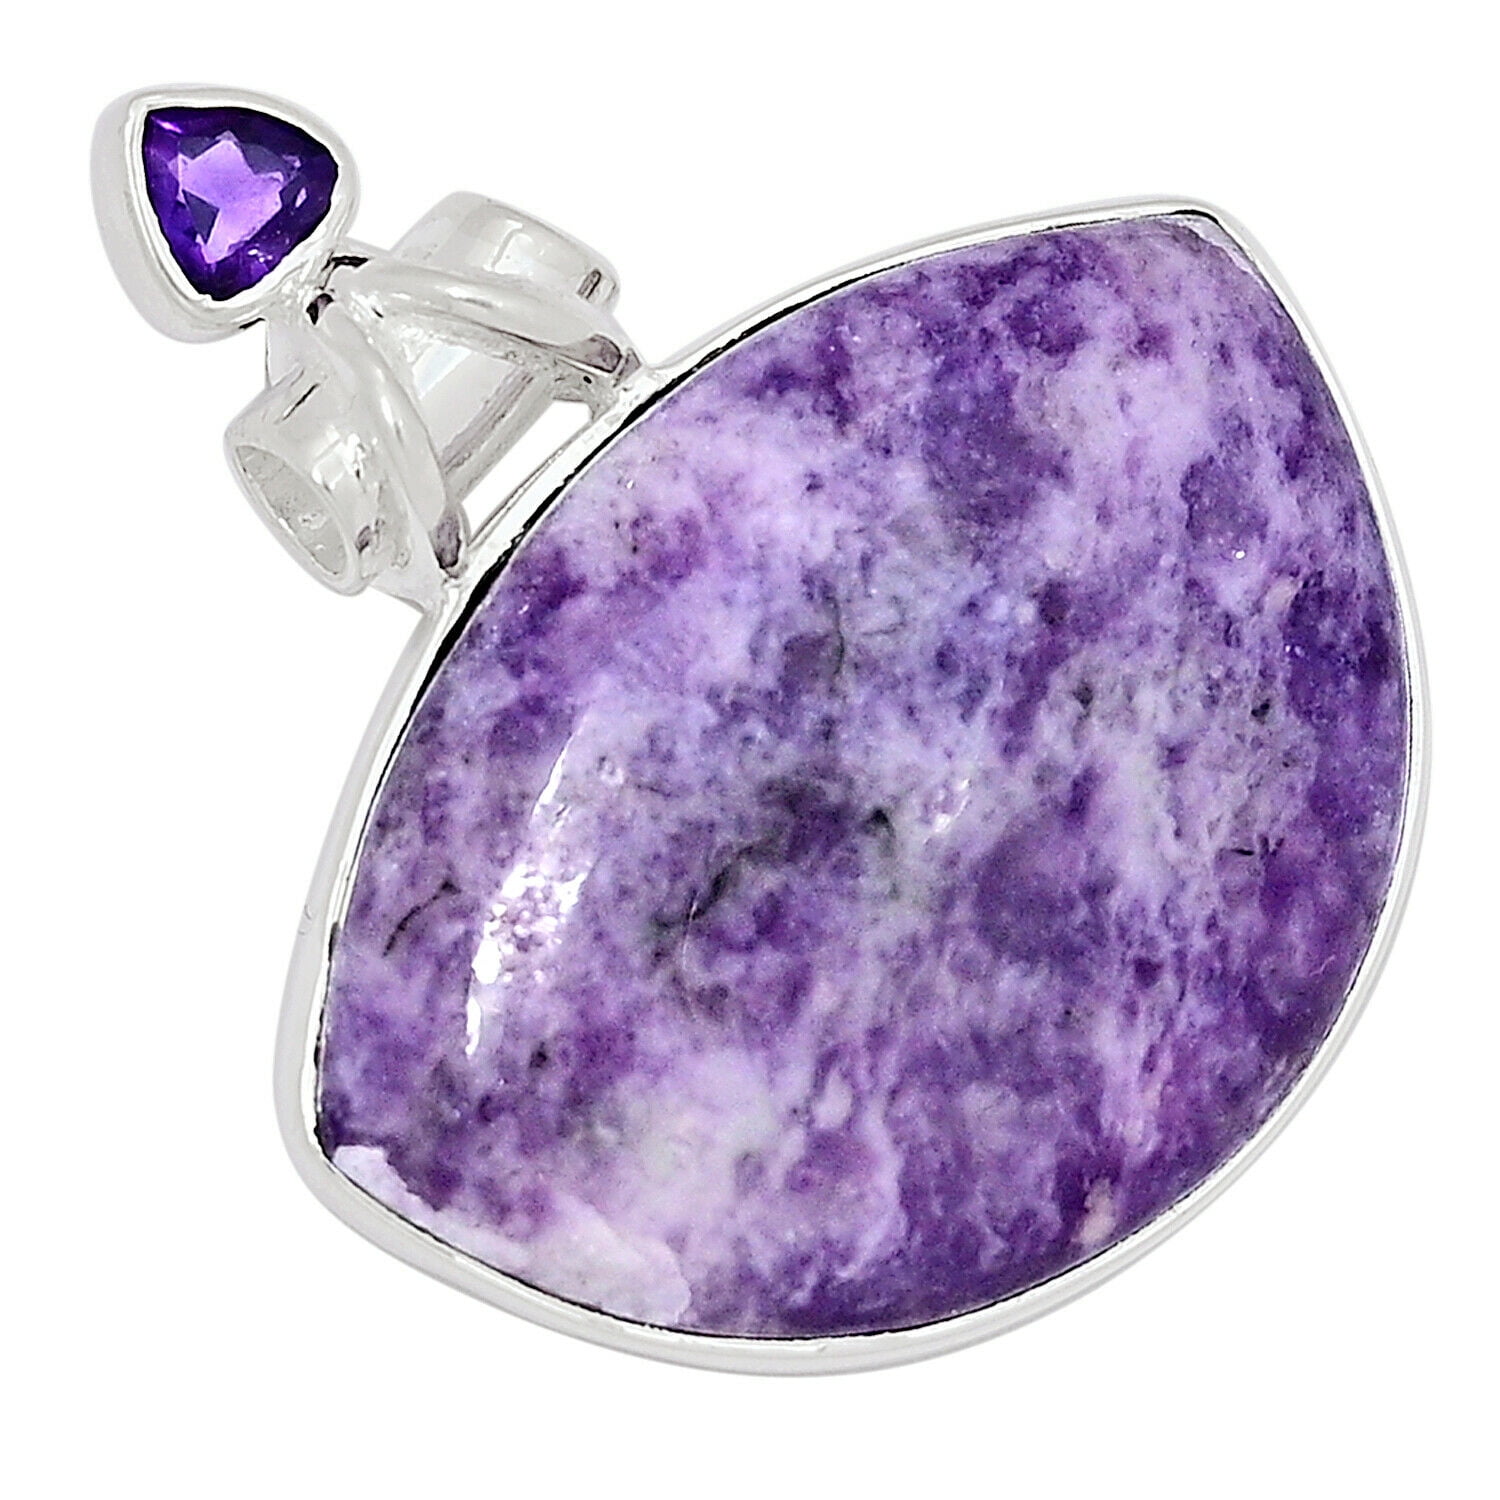 Lepidolite necklace Adjustable large stone pendant Lavender crystal necklace